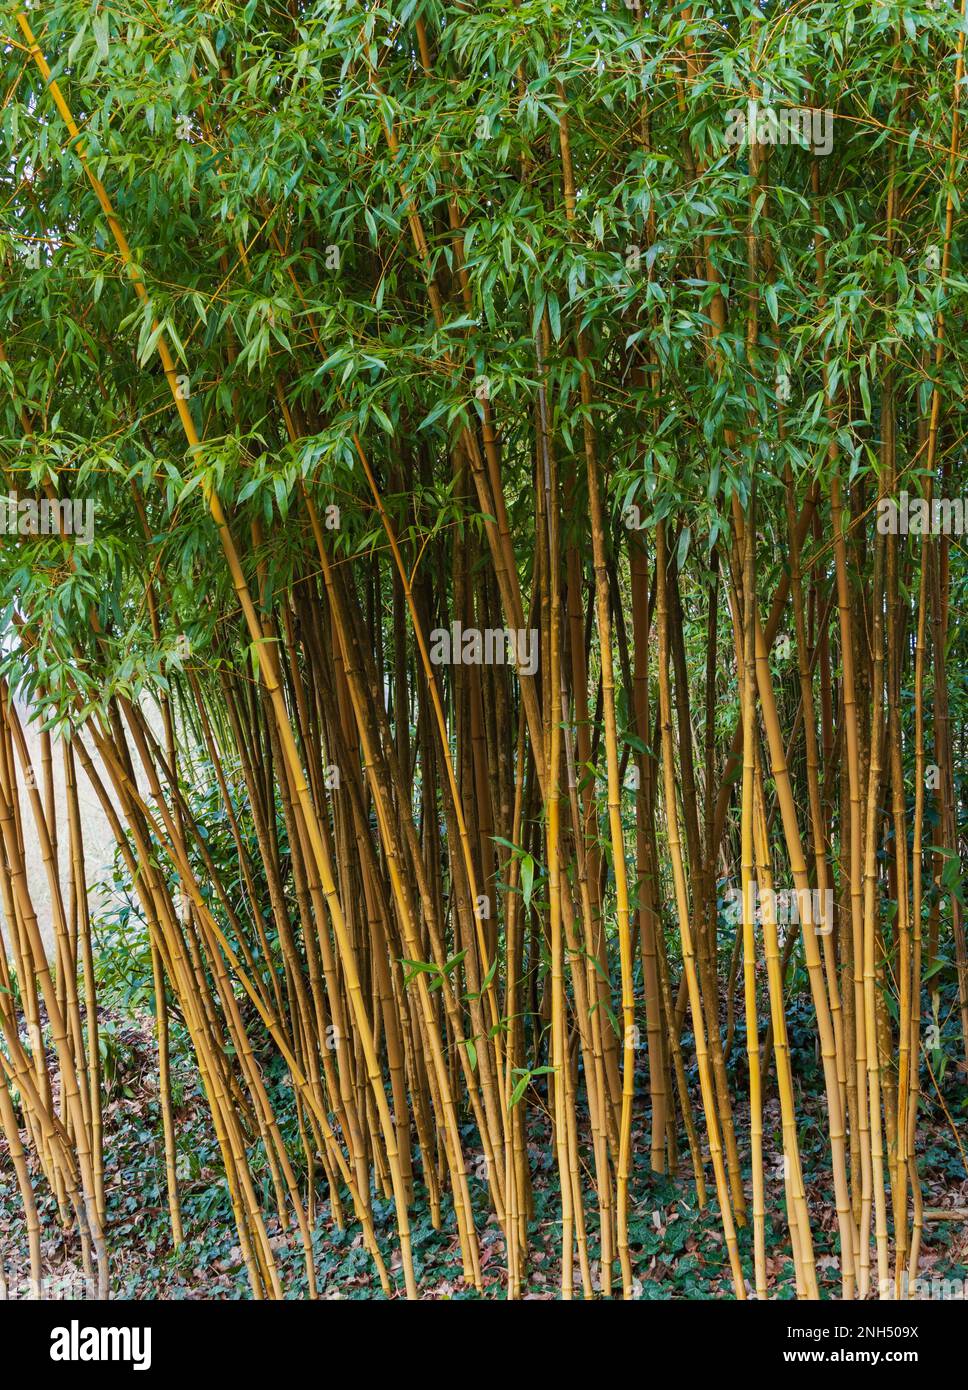 Cannes jaunes dénudées de bambou ornemental dur, Semiarundinaria fastuosa Banque D'Images